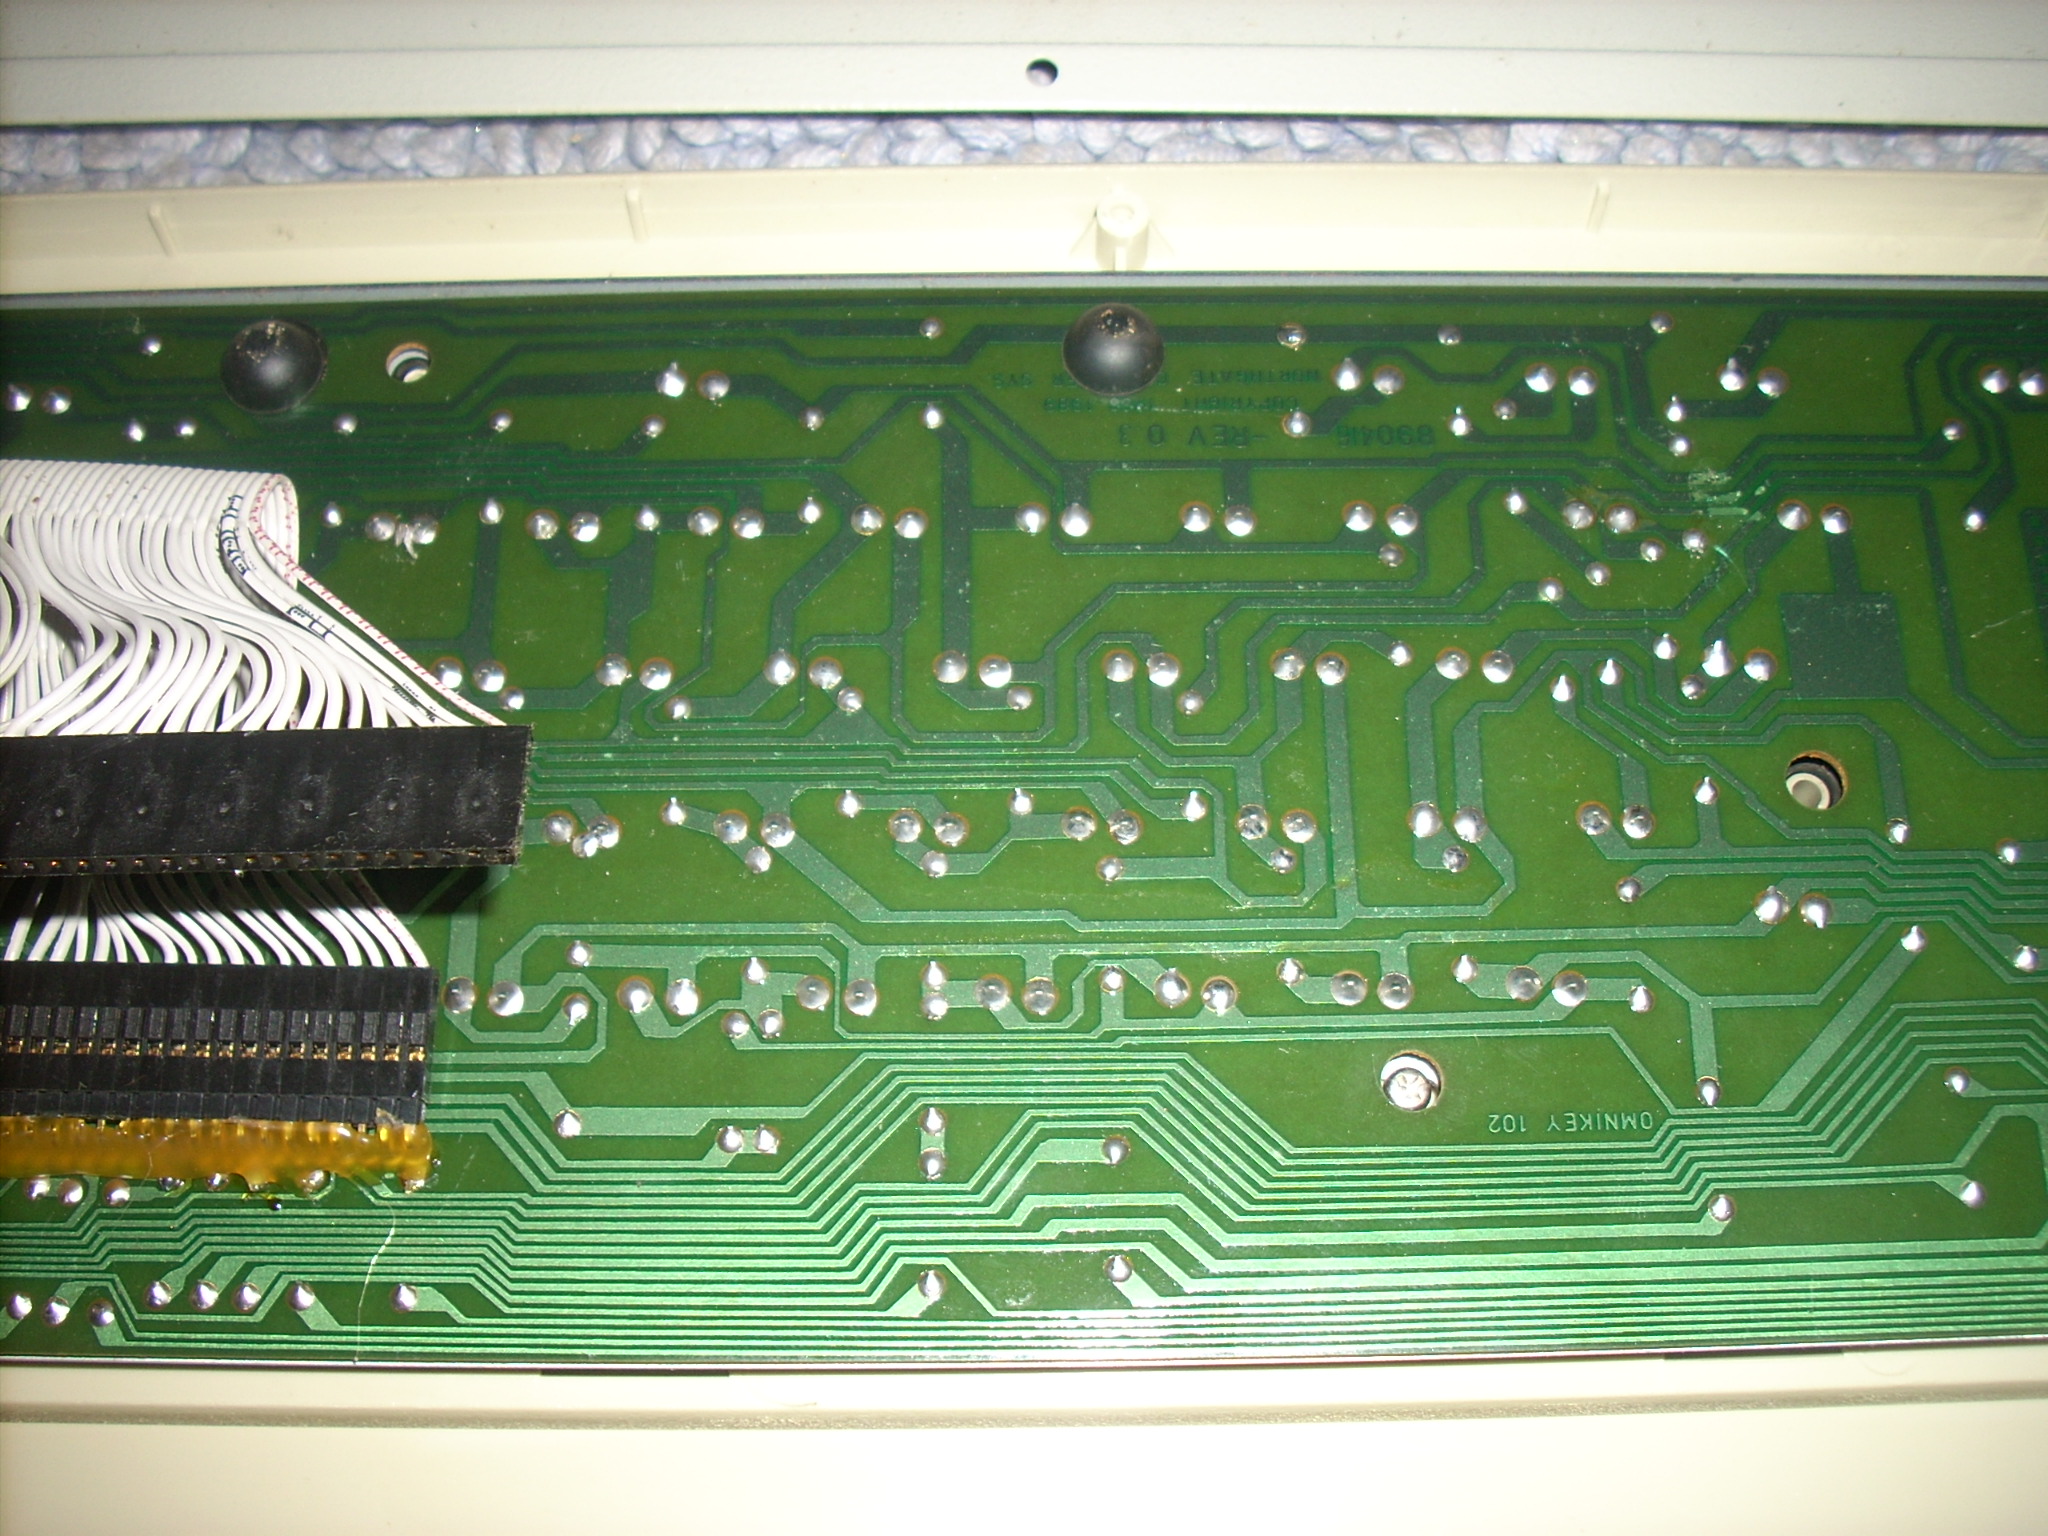 Gen2 PC board detail.